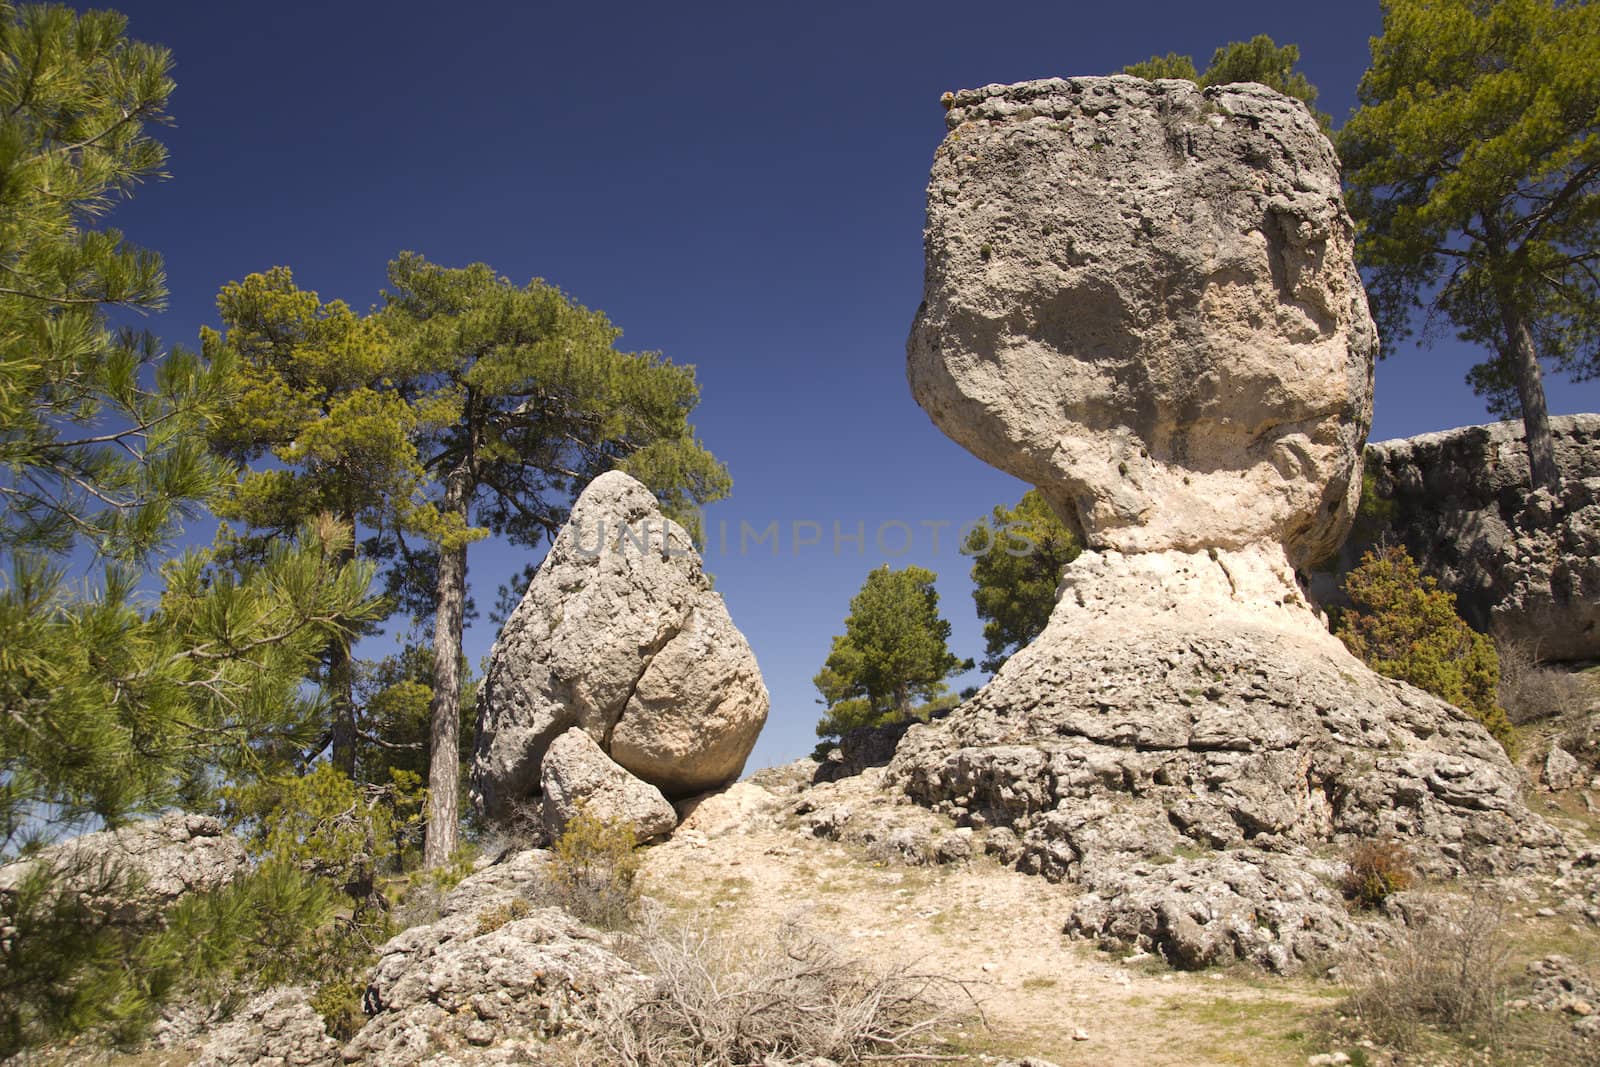 Limestone Rocks in cuenca, Spain by dannyus